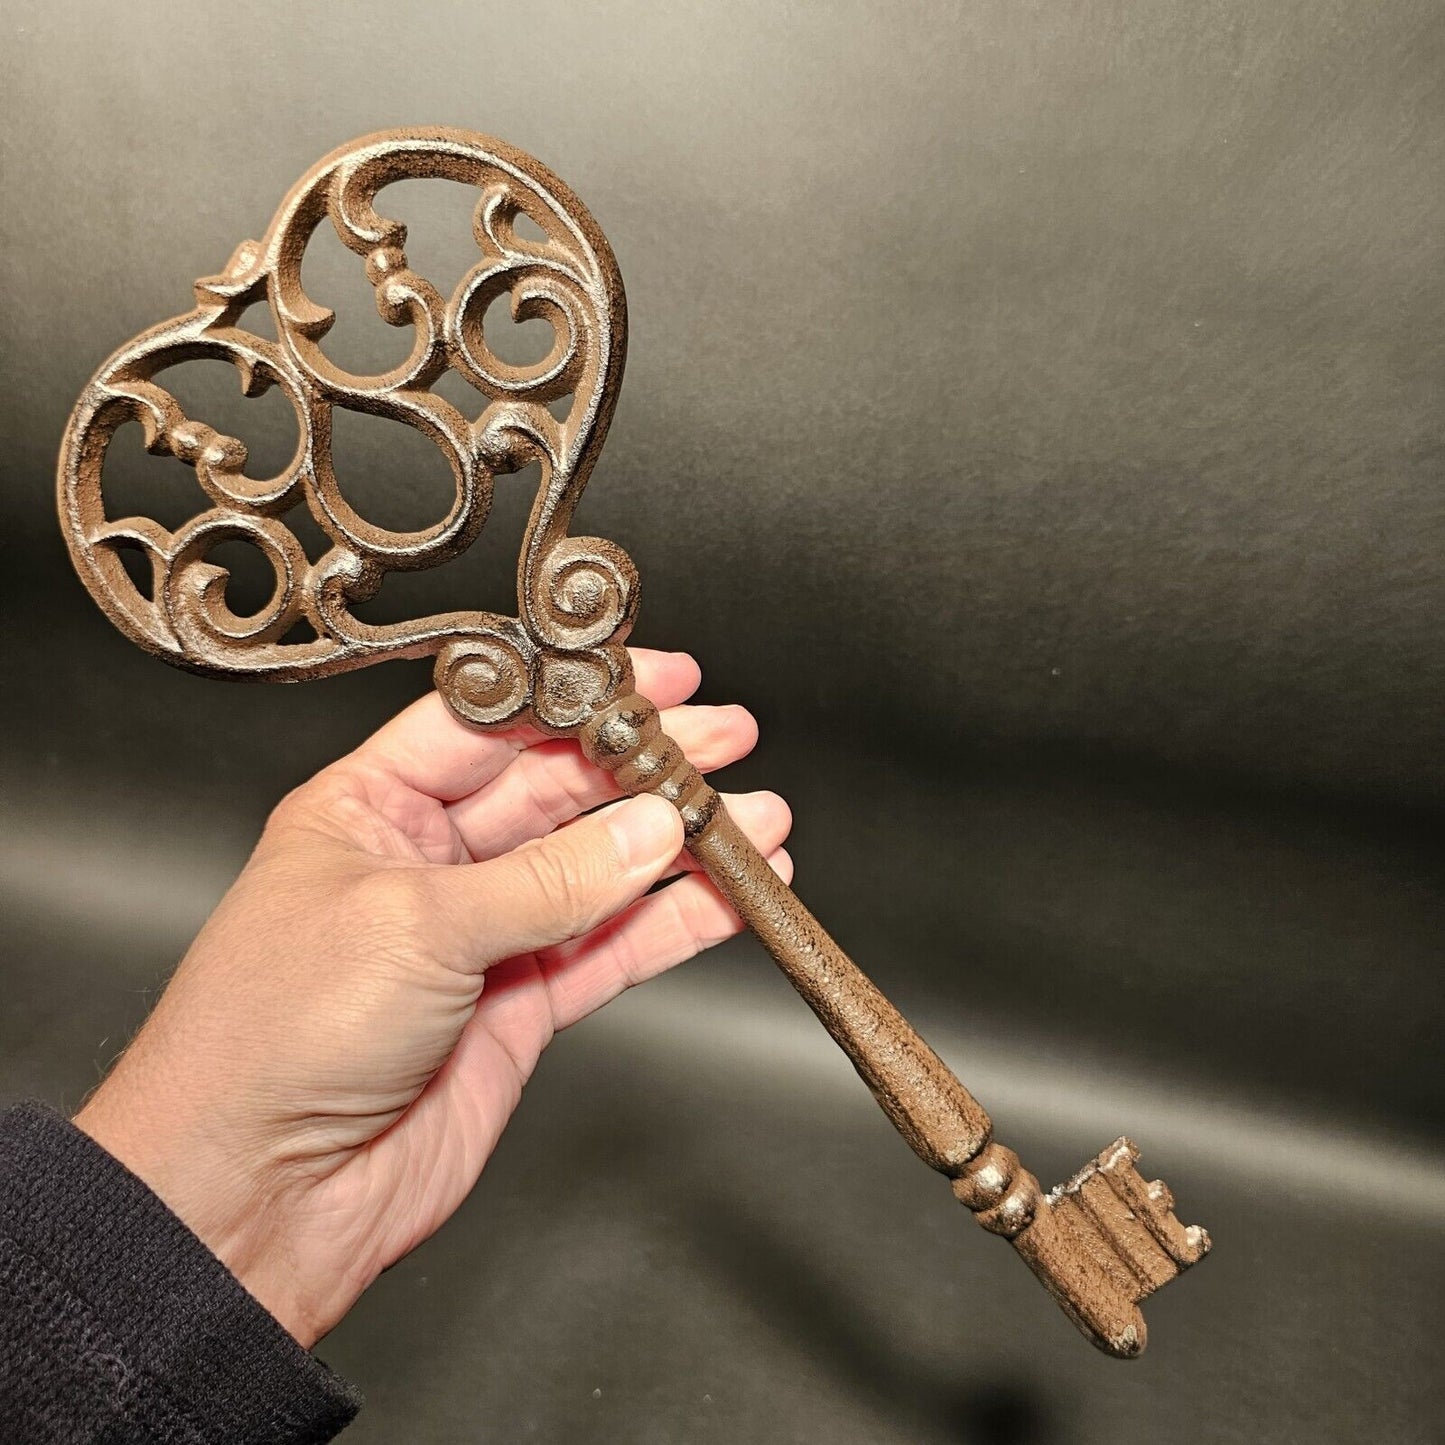 13" Antique Vintage Style Cast Iron Large Ornate Skeleton Key